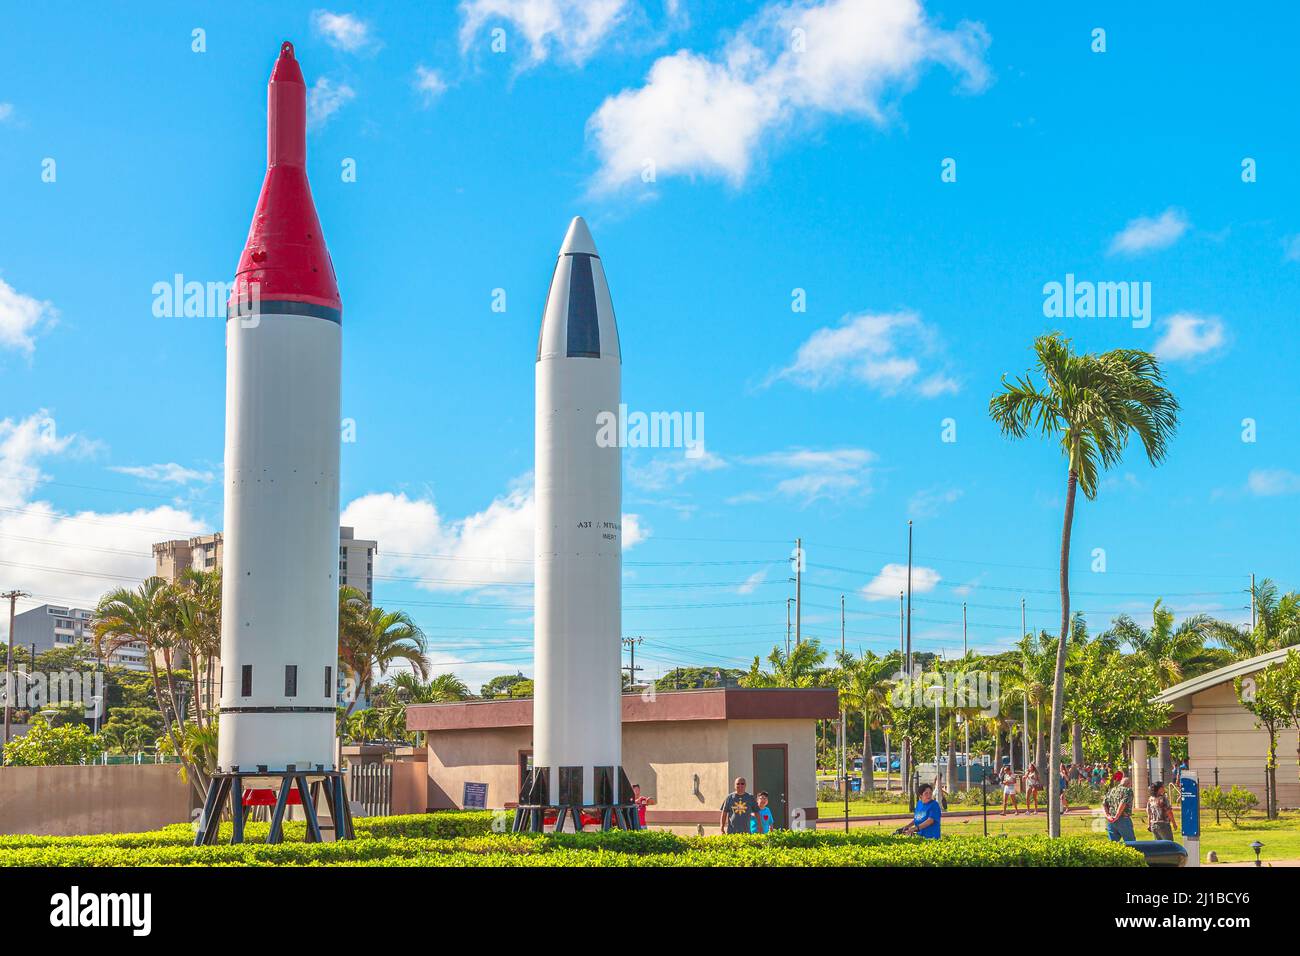 Honolulu, Oahu, Hawaii, États-Unis - août 2016 : missiles Polaris UGM-27 A1 et A3 de la guerre froide 1960s-1980s. Situé dans le Pearl Harbor Banque D'Images